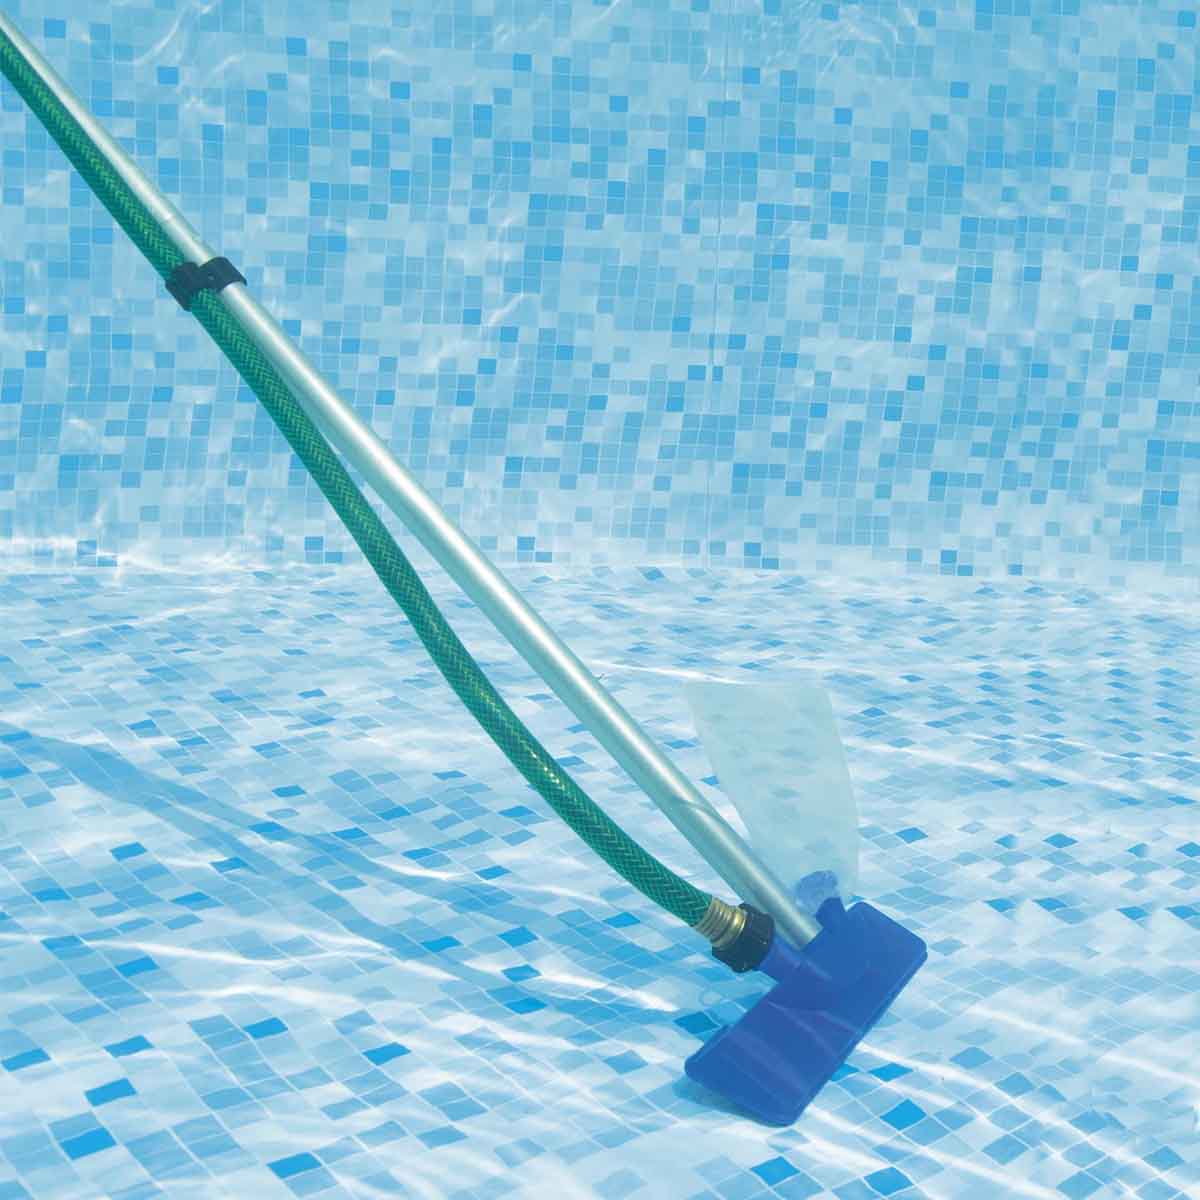 Kit Limpeza para piscina 2 em 1- Aspirador de piscina + Peneira 2,03 Bestway